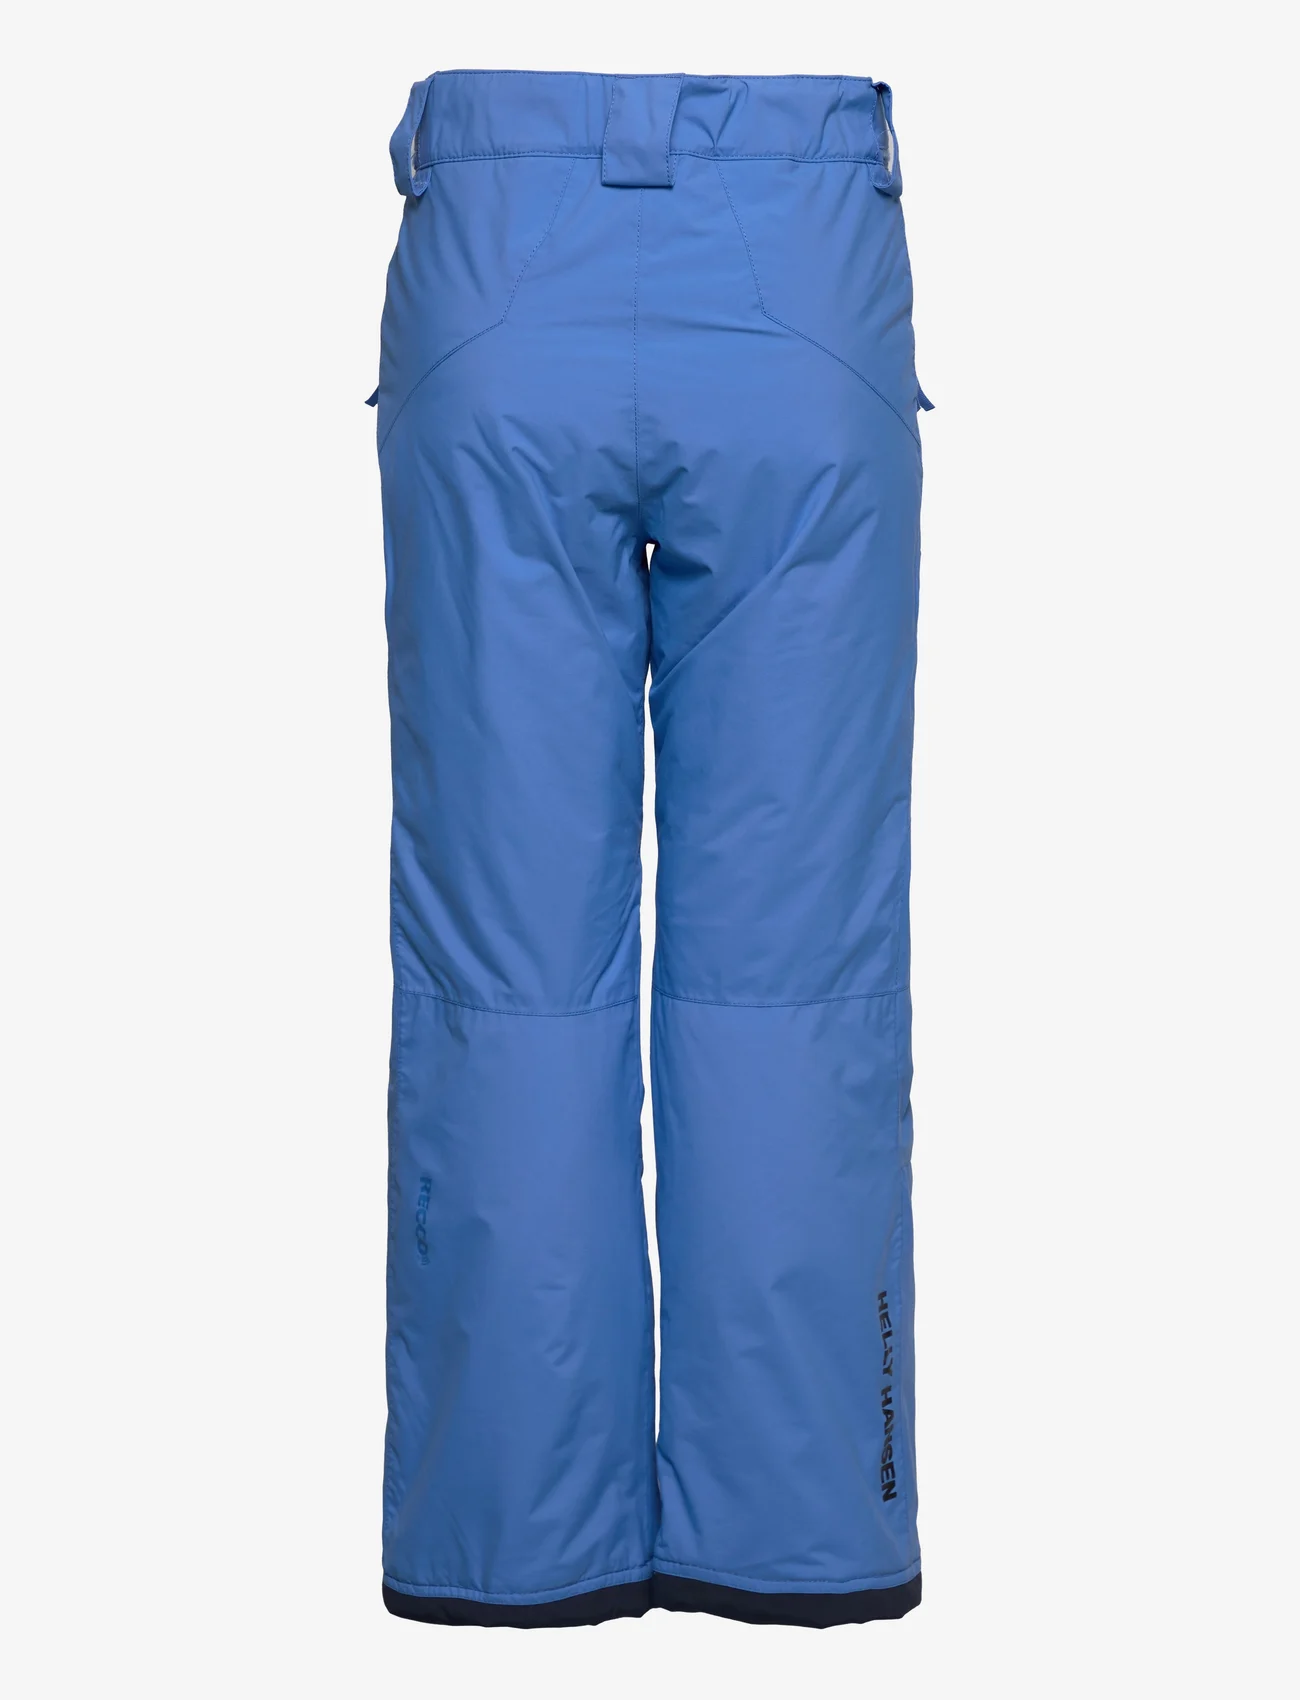 Helly Hansen - JR LEGENDARY PANT - ski pants - ultra blue - 1